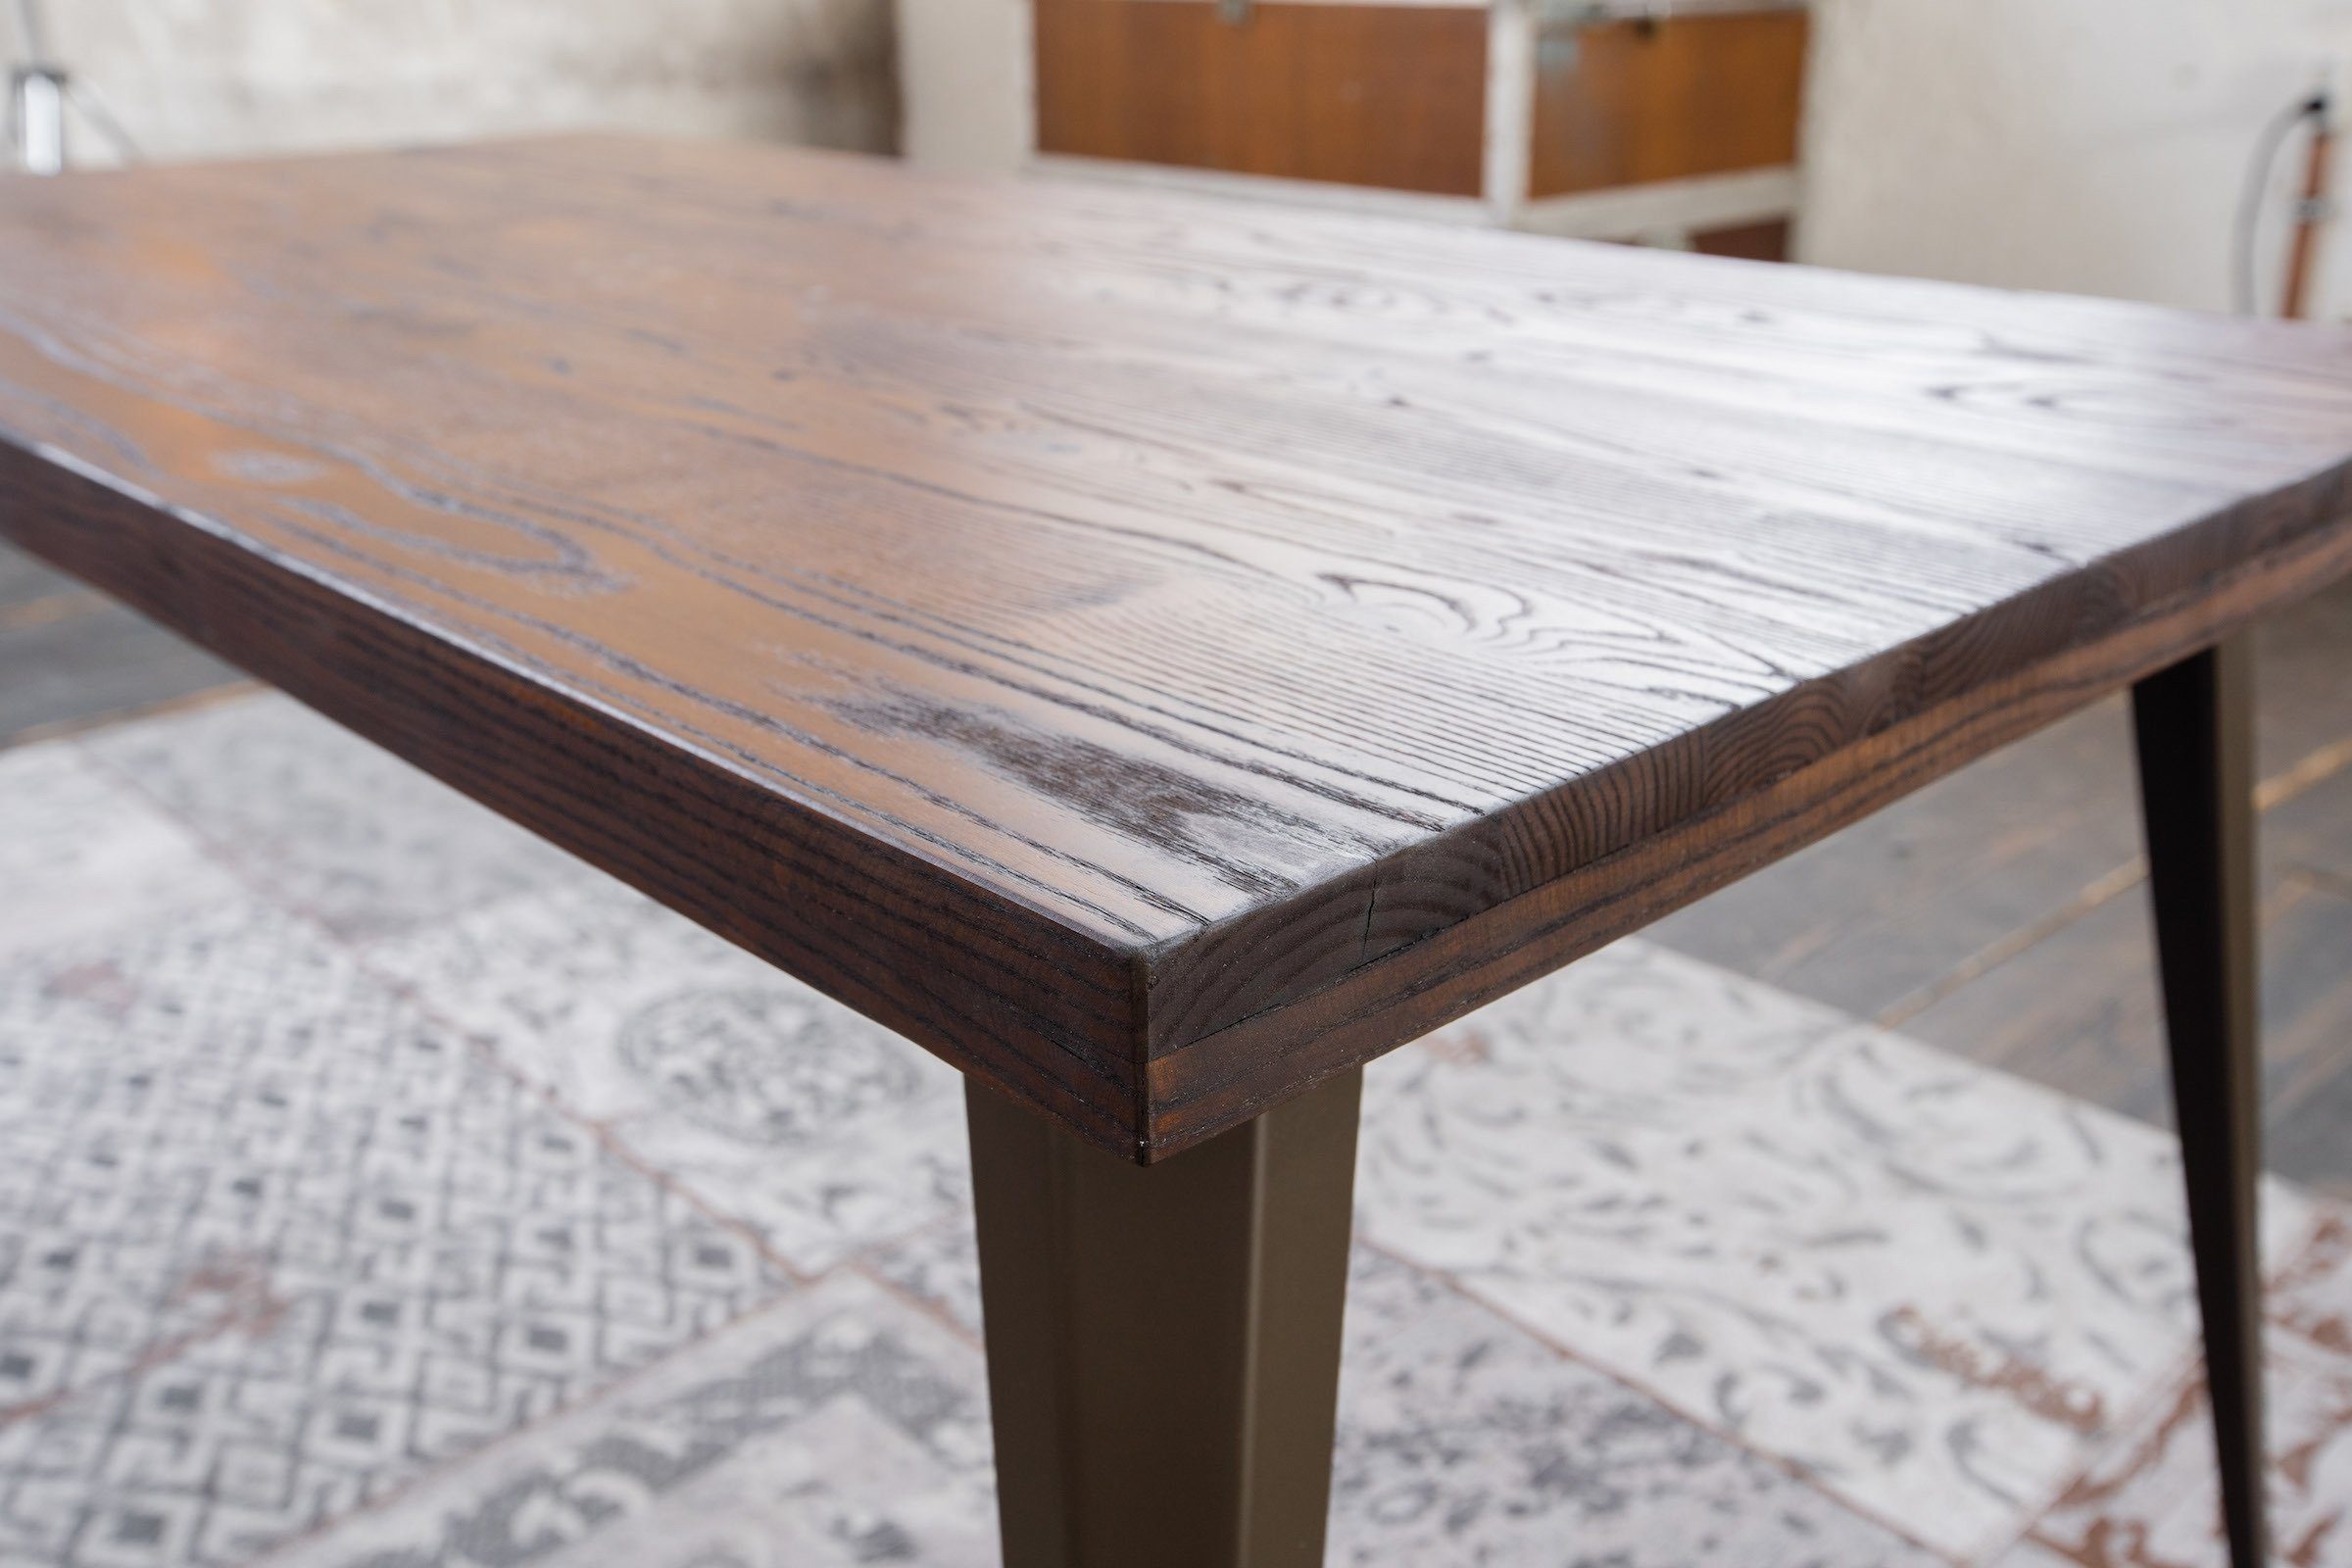 Esszimmertisch Esstisch Tisch KAWOLA Holz KELIO, versch. Größen